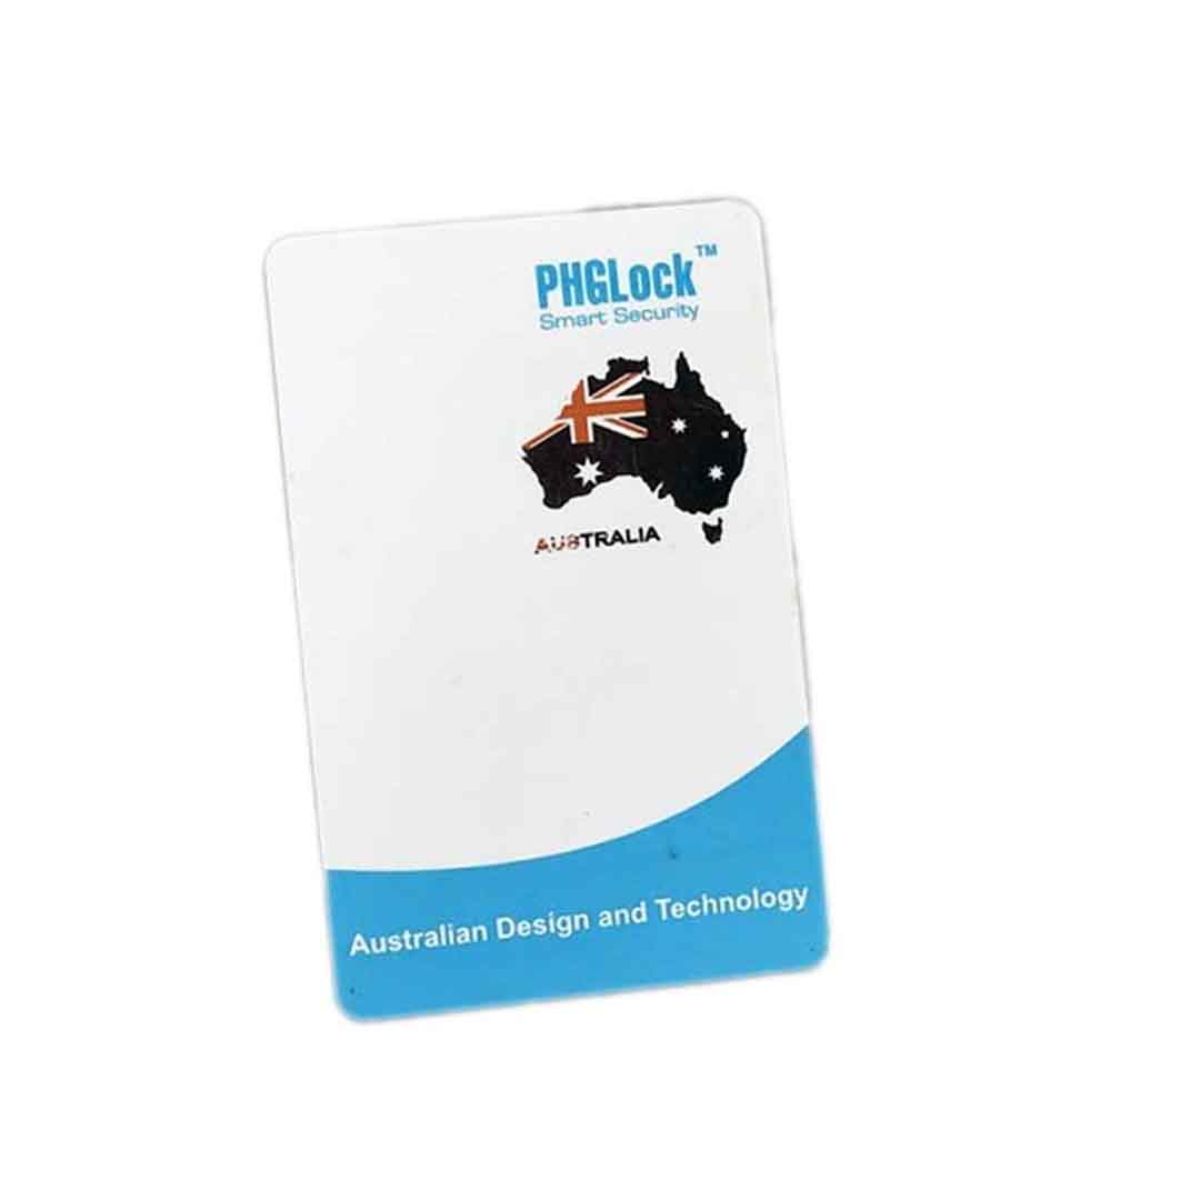 Thẻ cảm ứng MI CARD (Mifare) PHGLock chất liệu ABS cực bền, chống thấm nước